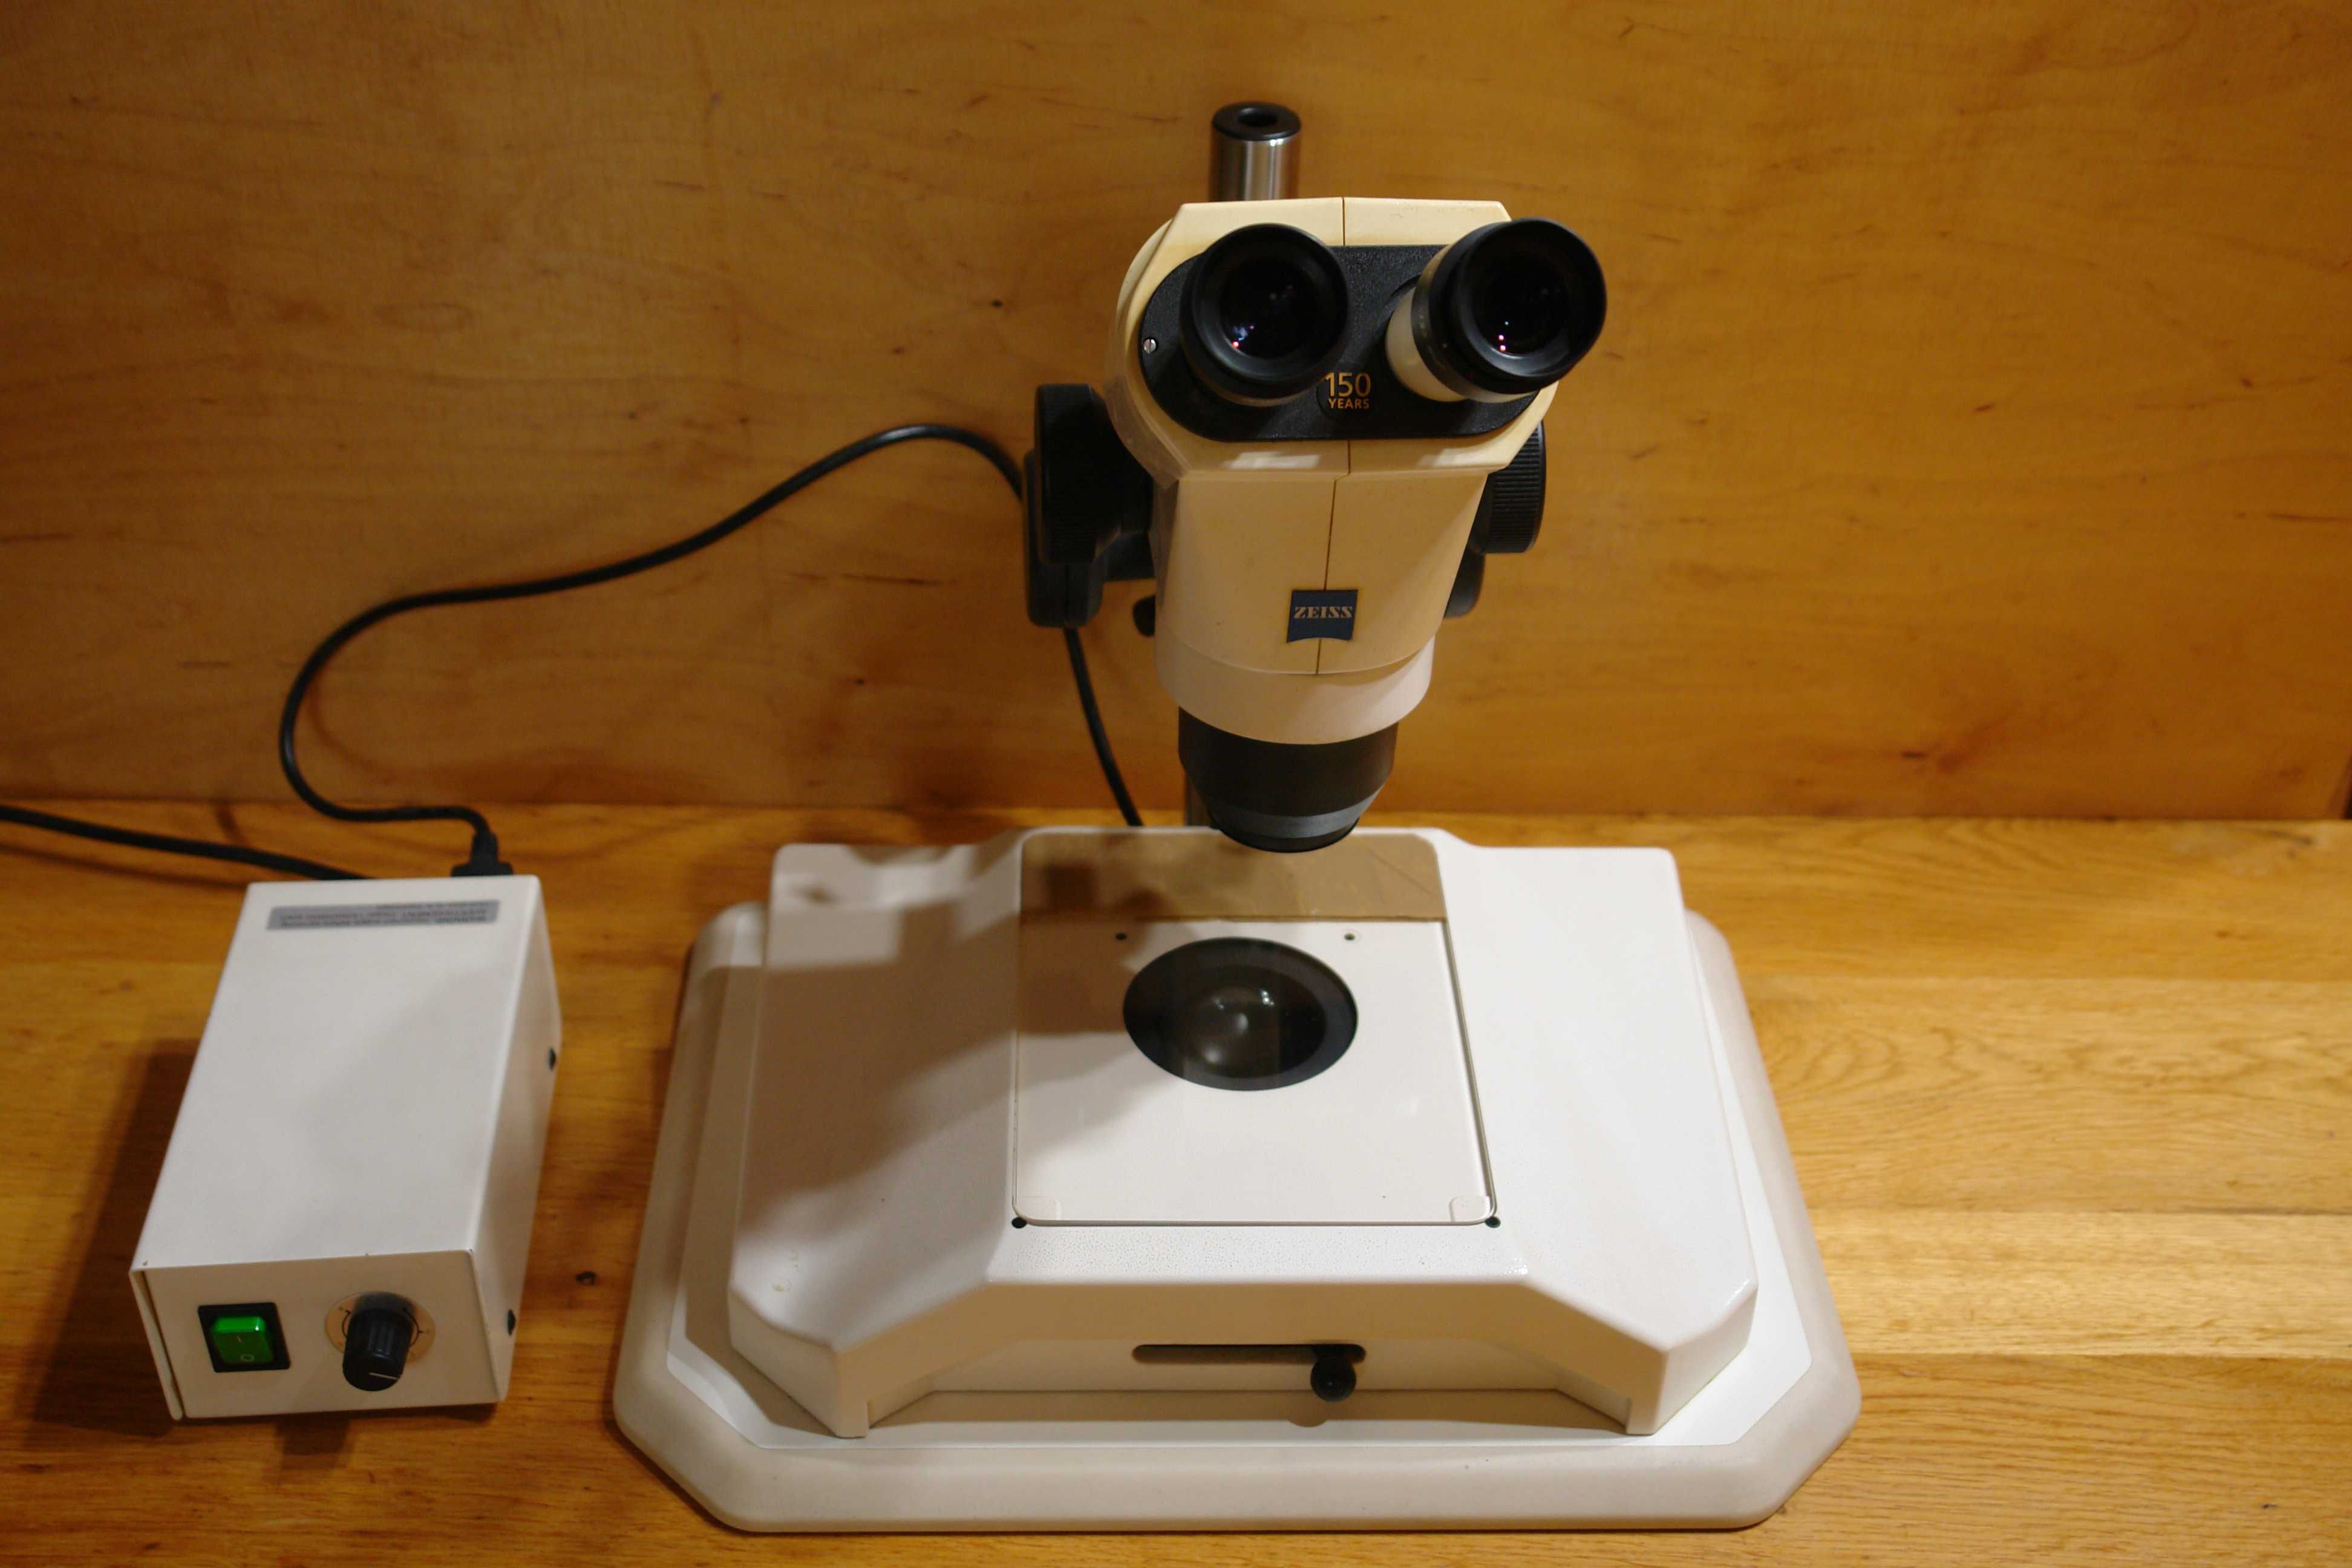 Mikroskop stereoskopowy techniczny STEMI 2000 Zeiss POLECAM